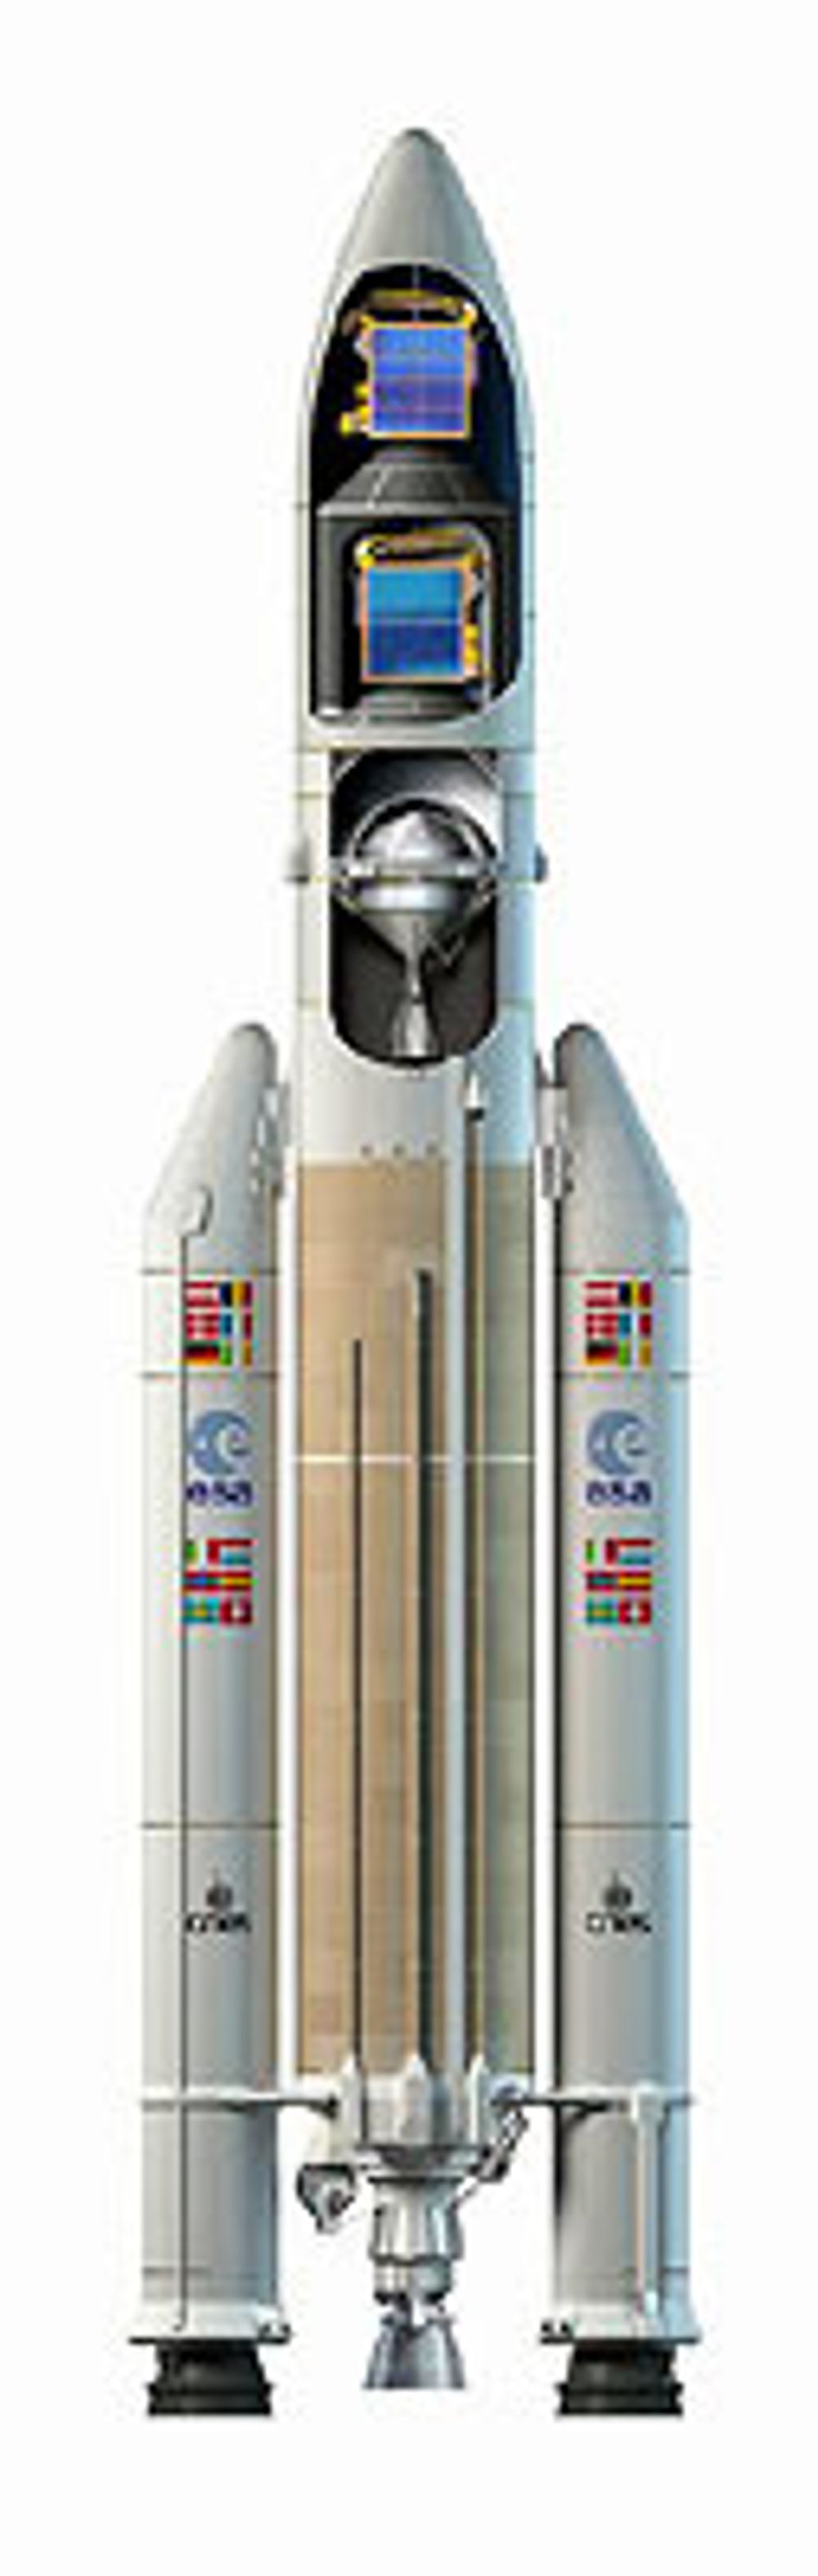 Ariane 5 ECA - rakett for utplassering av en - to satellitter.

Høyde:  maks 56 m
Diameter: maks 5,4 m
Vekt: maks 780 tonn
Nyttelast: maks 10 tonn

ILL: ESA